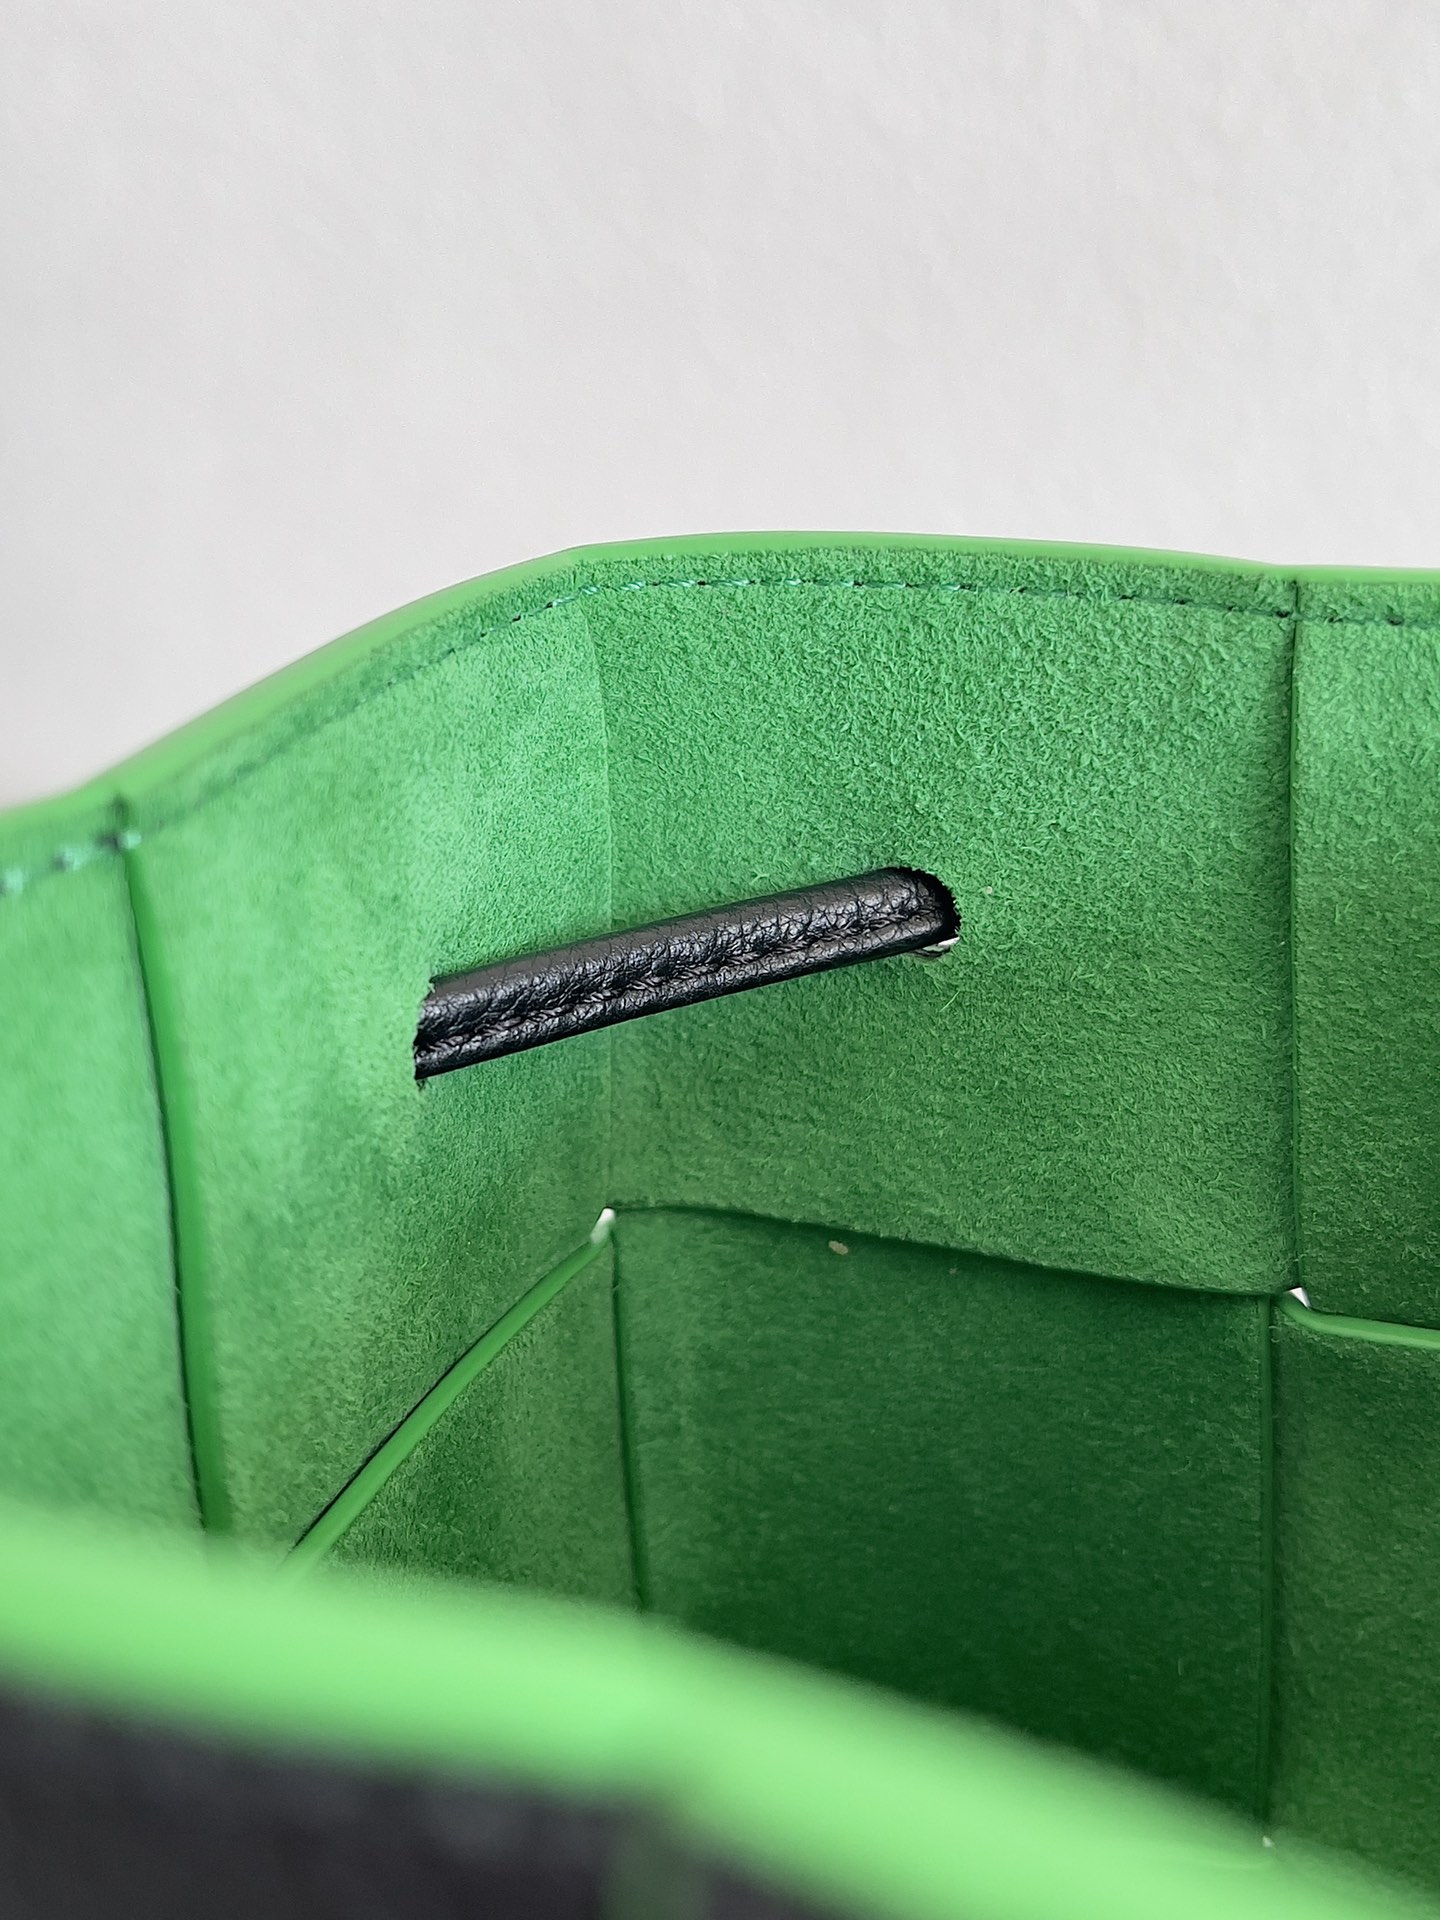 Bv 新款Cassette 水桶包 小号 水桶包大方格的设计 经典的编织元素 14cm 粒面黑 鹦鹉绿